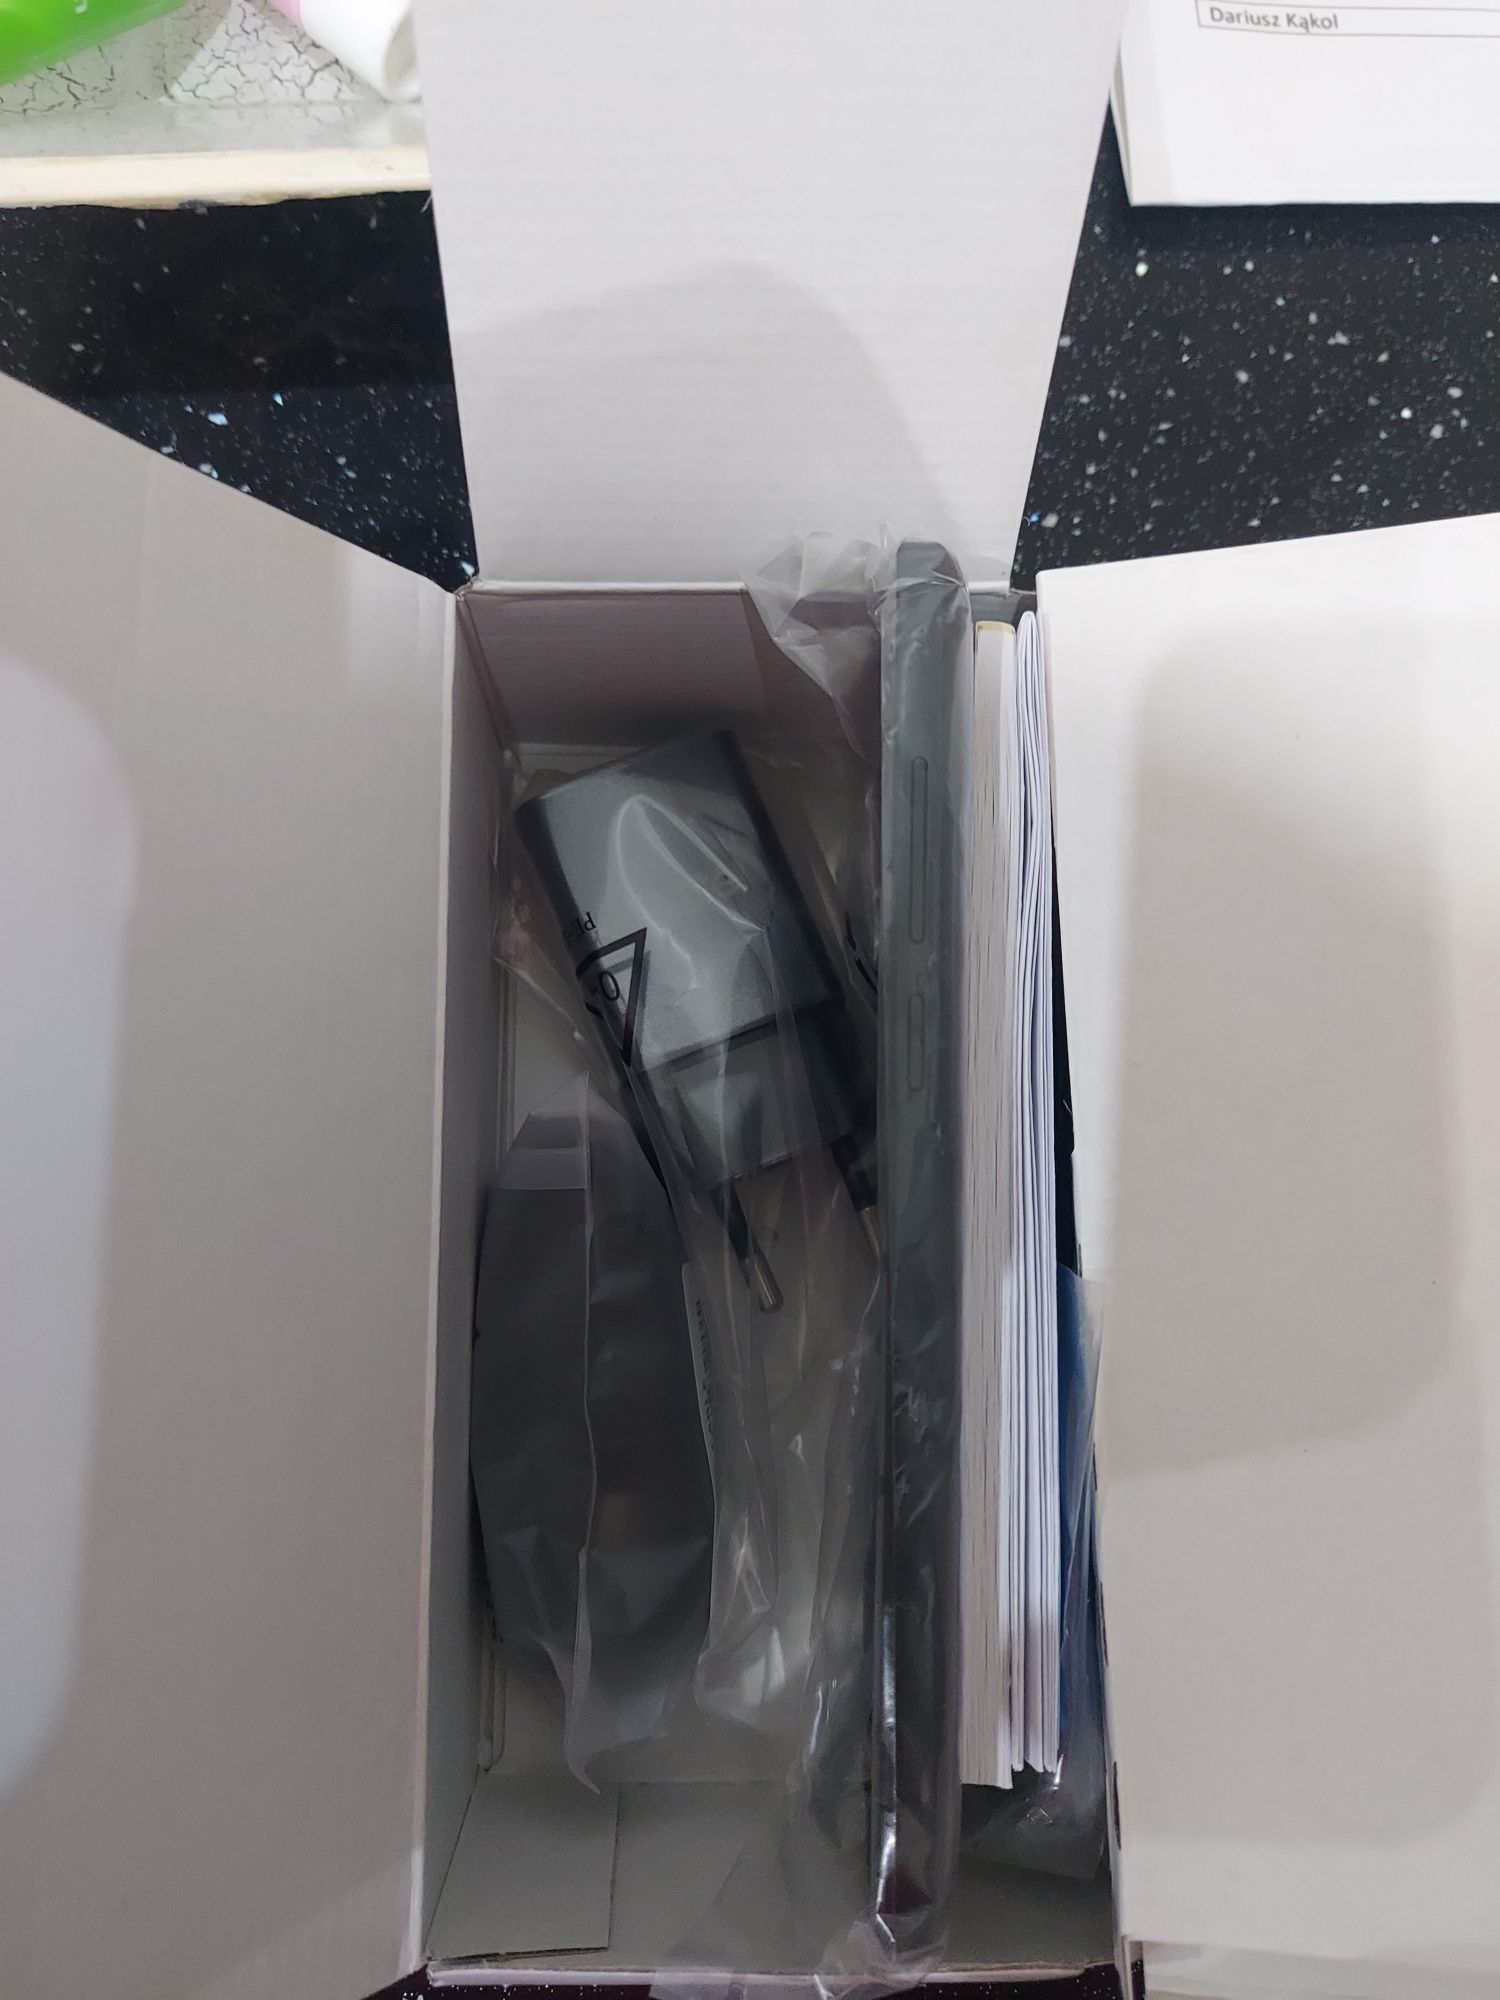 Smartfon Alcatel 1 B 2022 DS nowy w pudełku